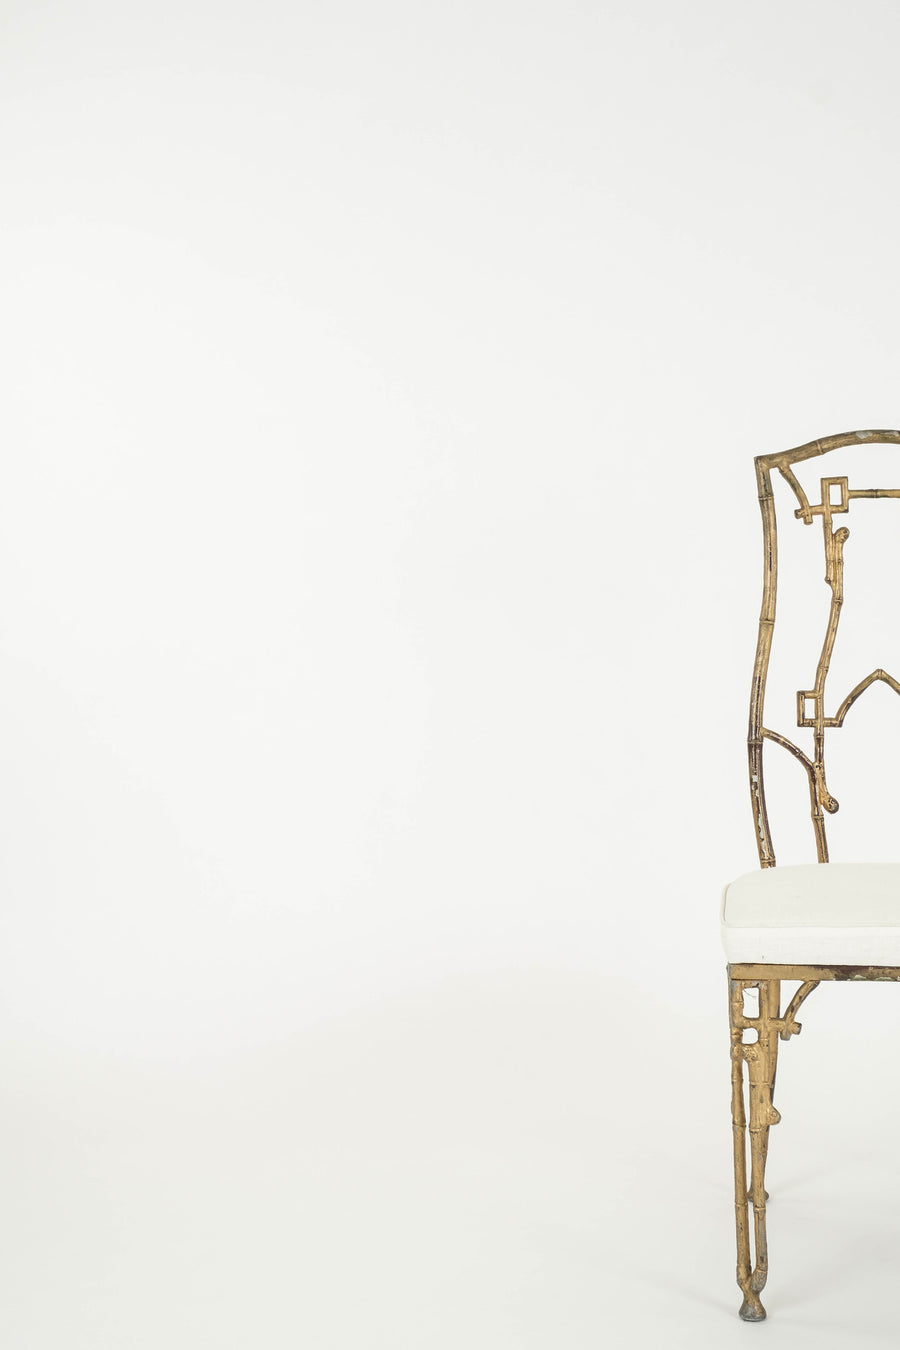 Aesthetic Bamboo Gilt Iron Side Chair II